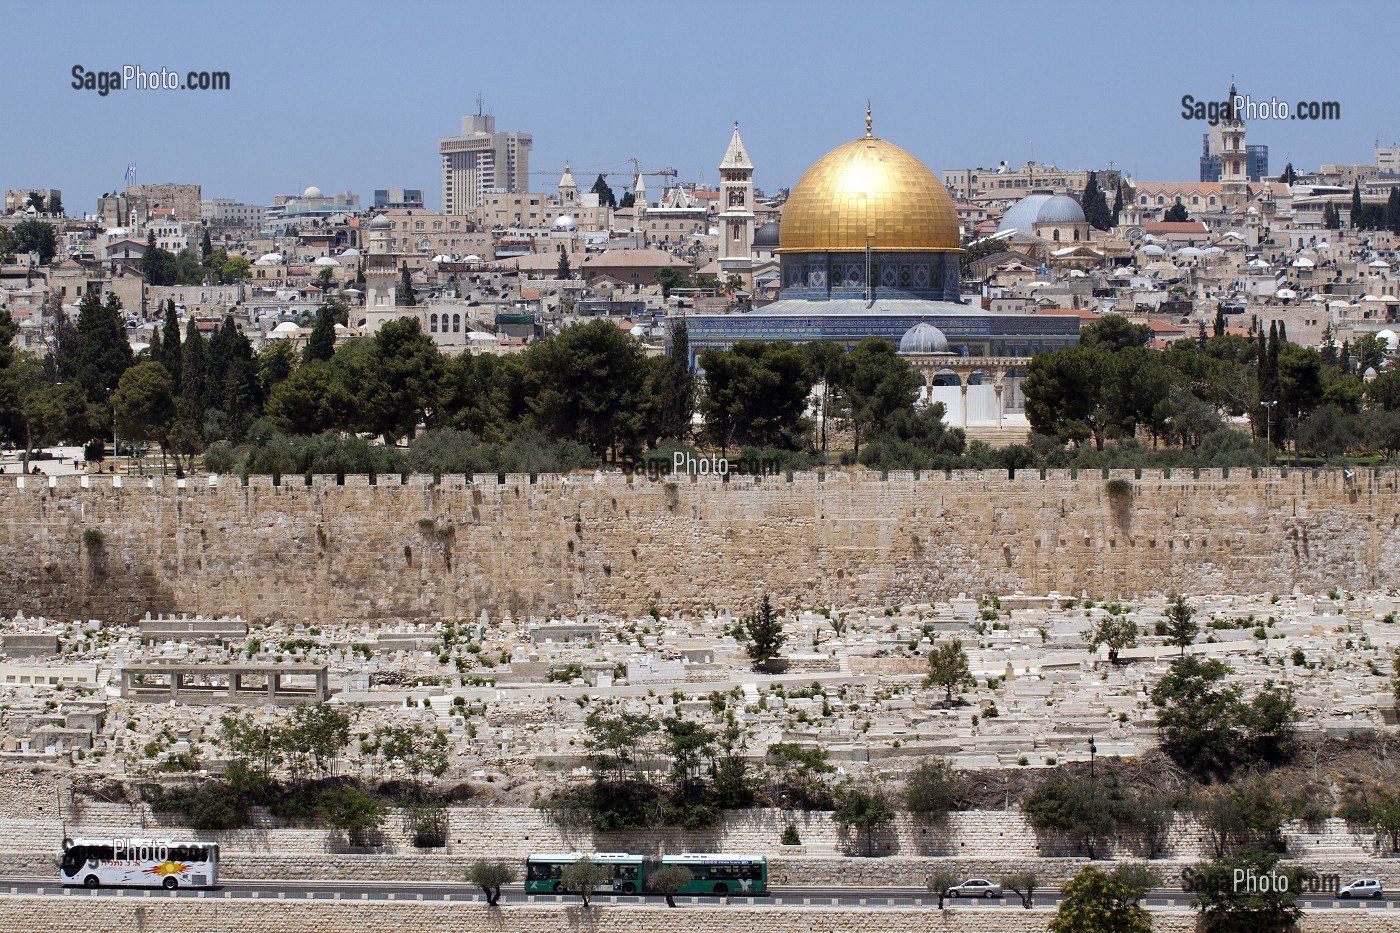 JERUSALEM AVEC LE CIMETIERE JUIF, LES REMPARTS DE LA VIEILLE VILLE ET LE MONT DU TEMPLE, VUE DEPUIS LE MONT DES OLIVIERS, JERUSALEM, ISRAEL 